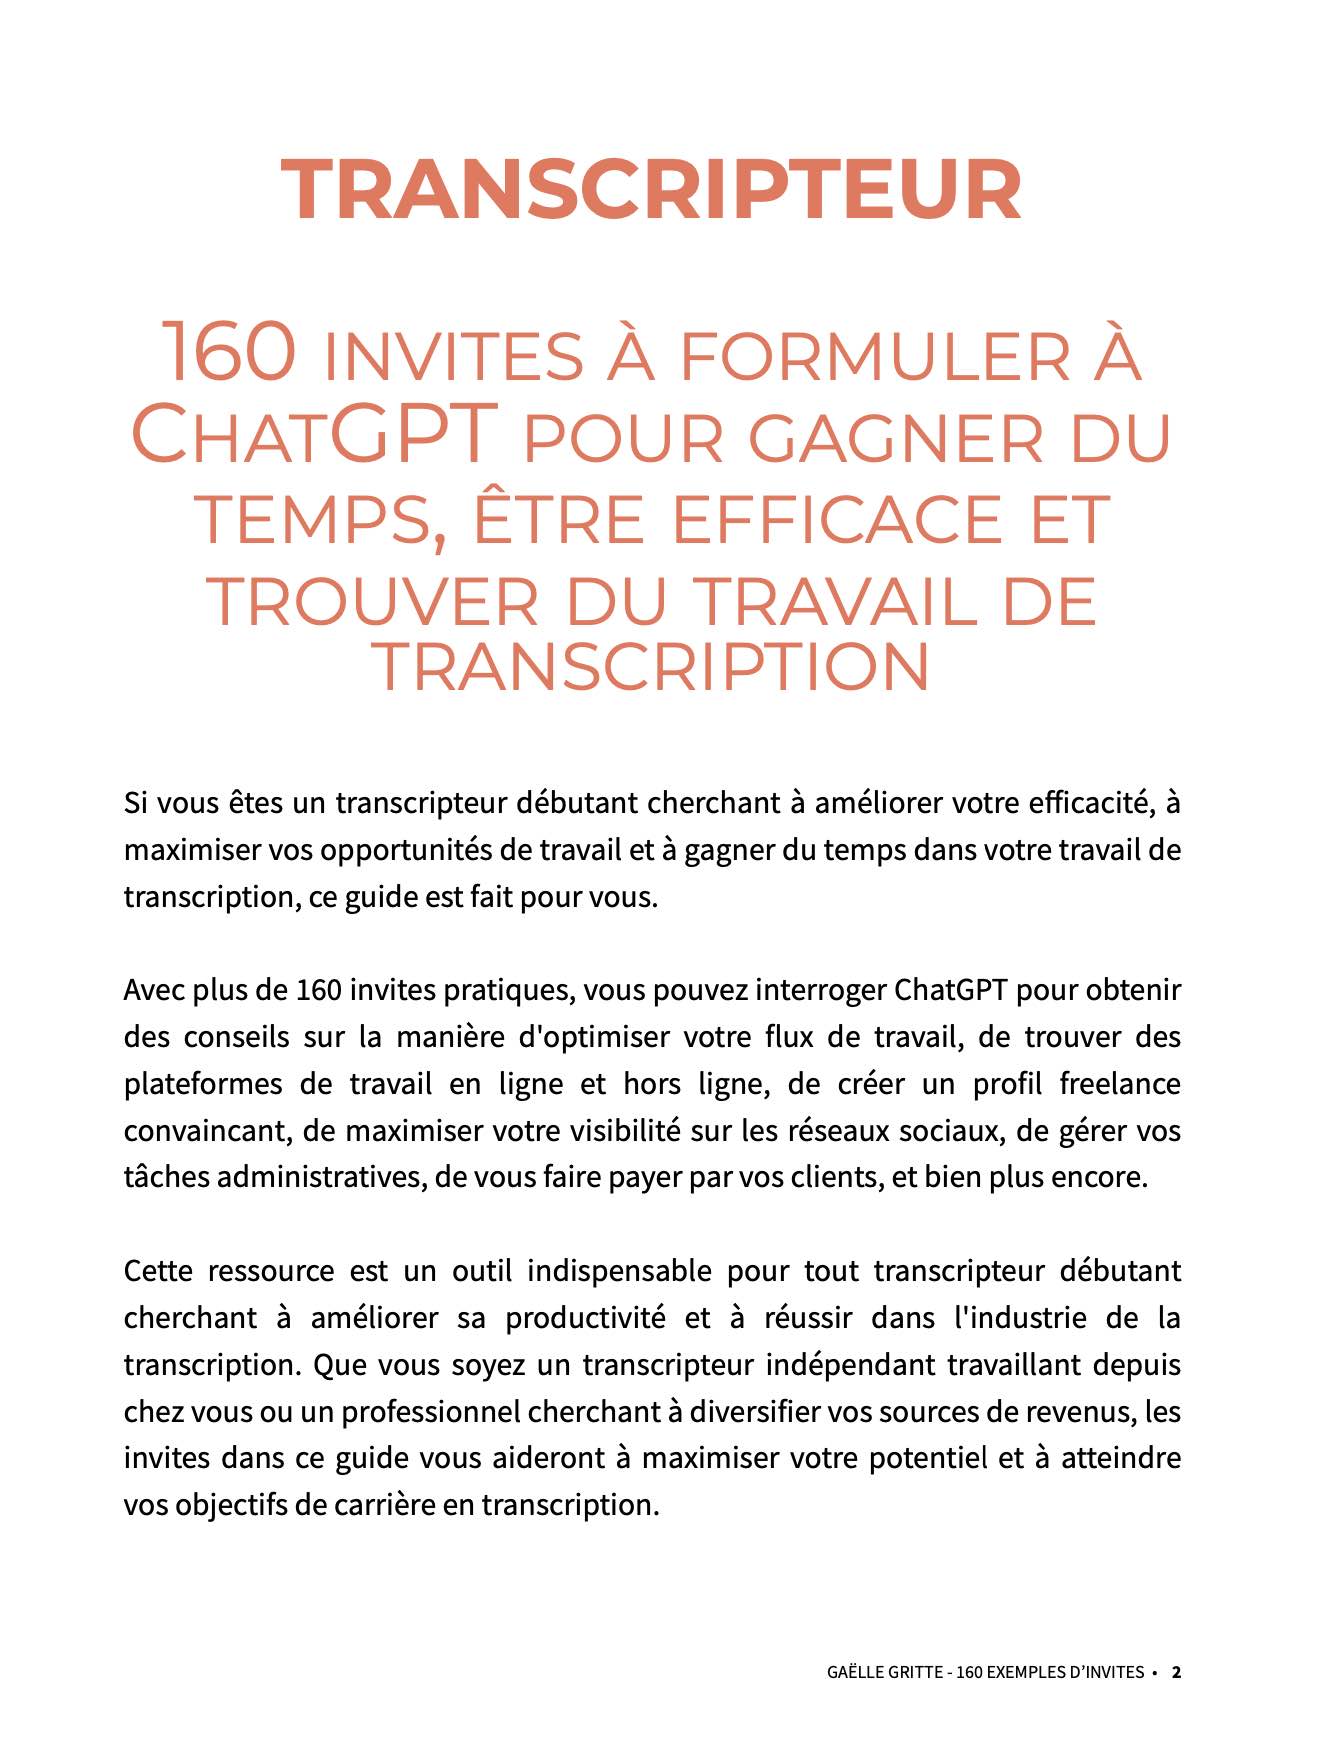 Pack "Transcripteur : gagner du temps, être plus efficace et trouver du travail grâce à ChatGPT"